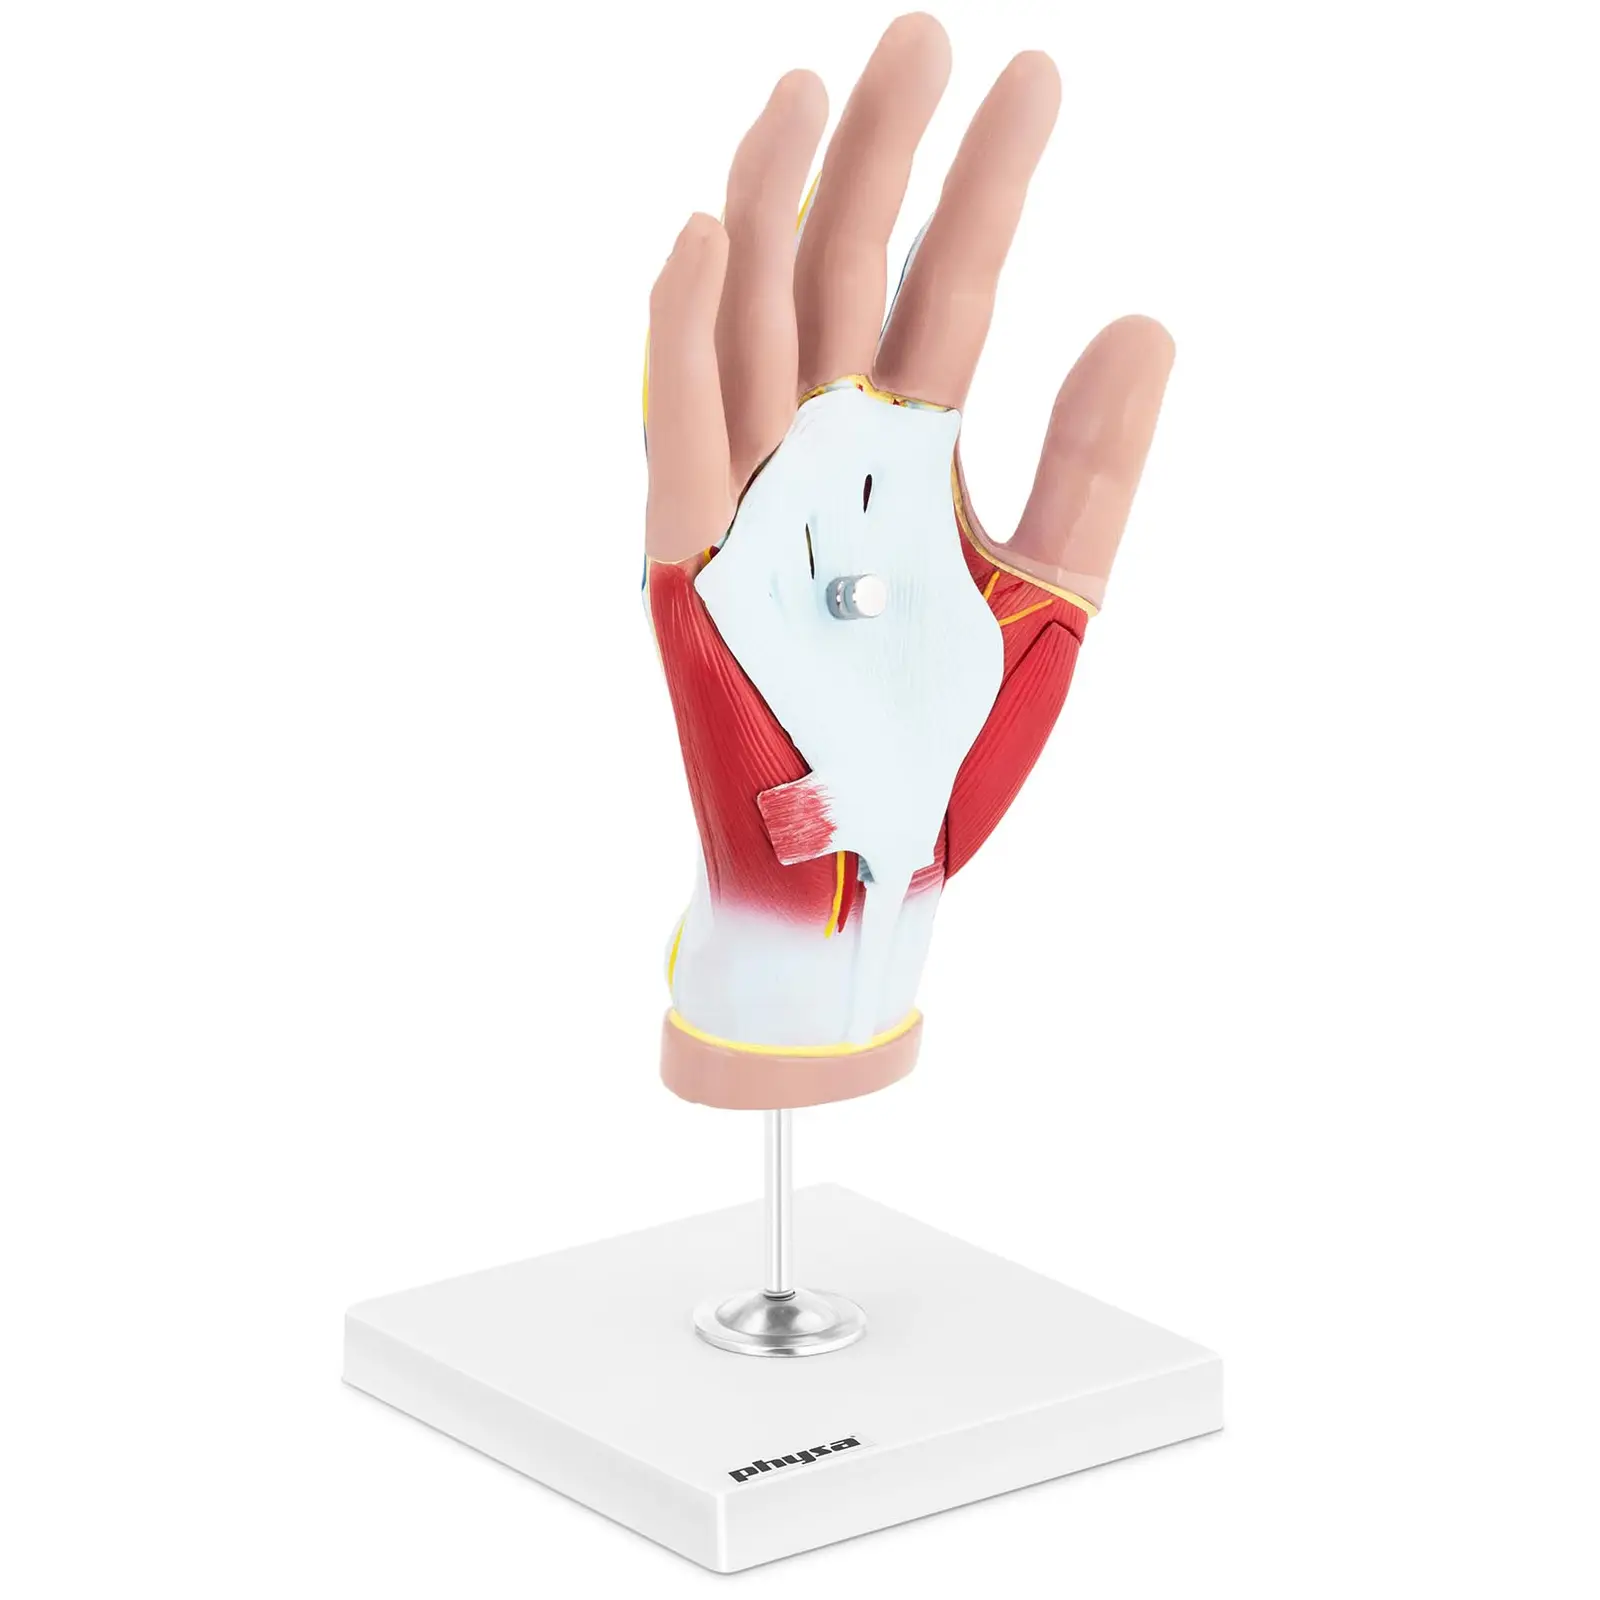 Maquette anatomique de la main humaine avec dégénérescence musculaire - En 4 parties - Grandeur nature